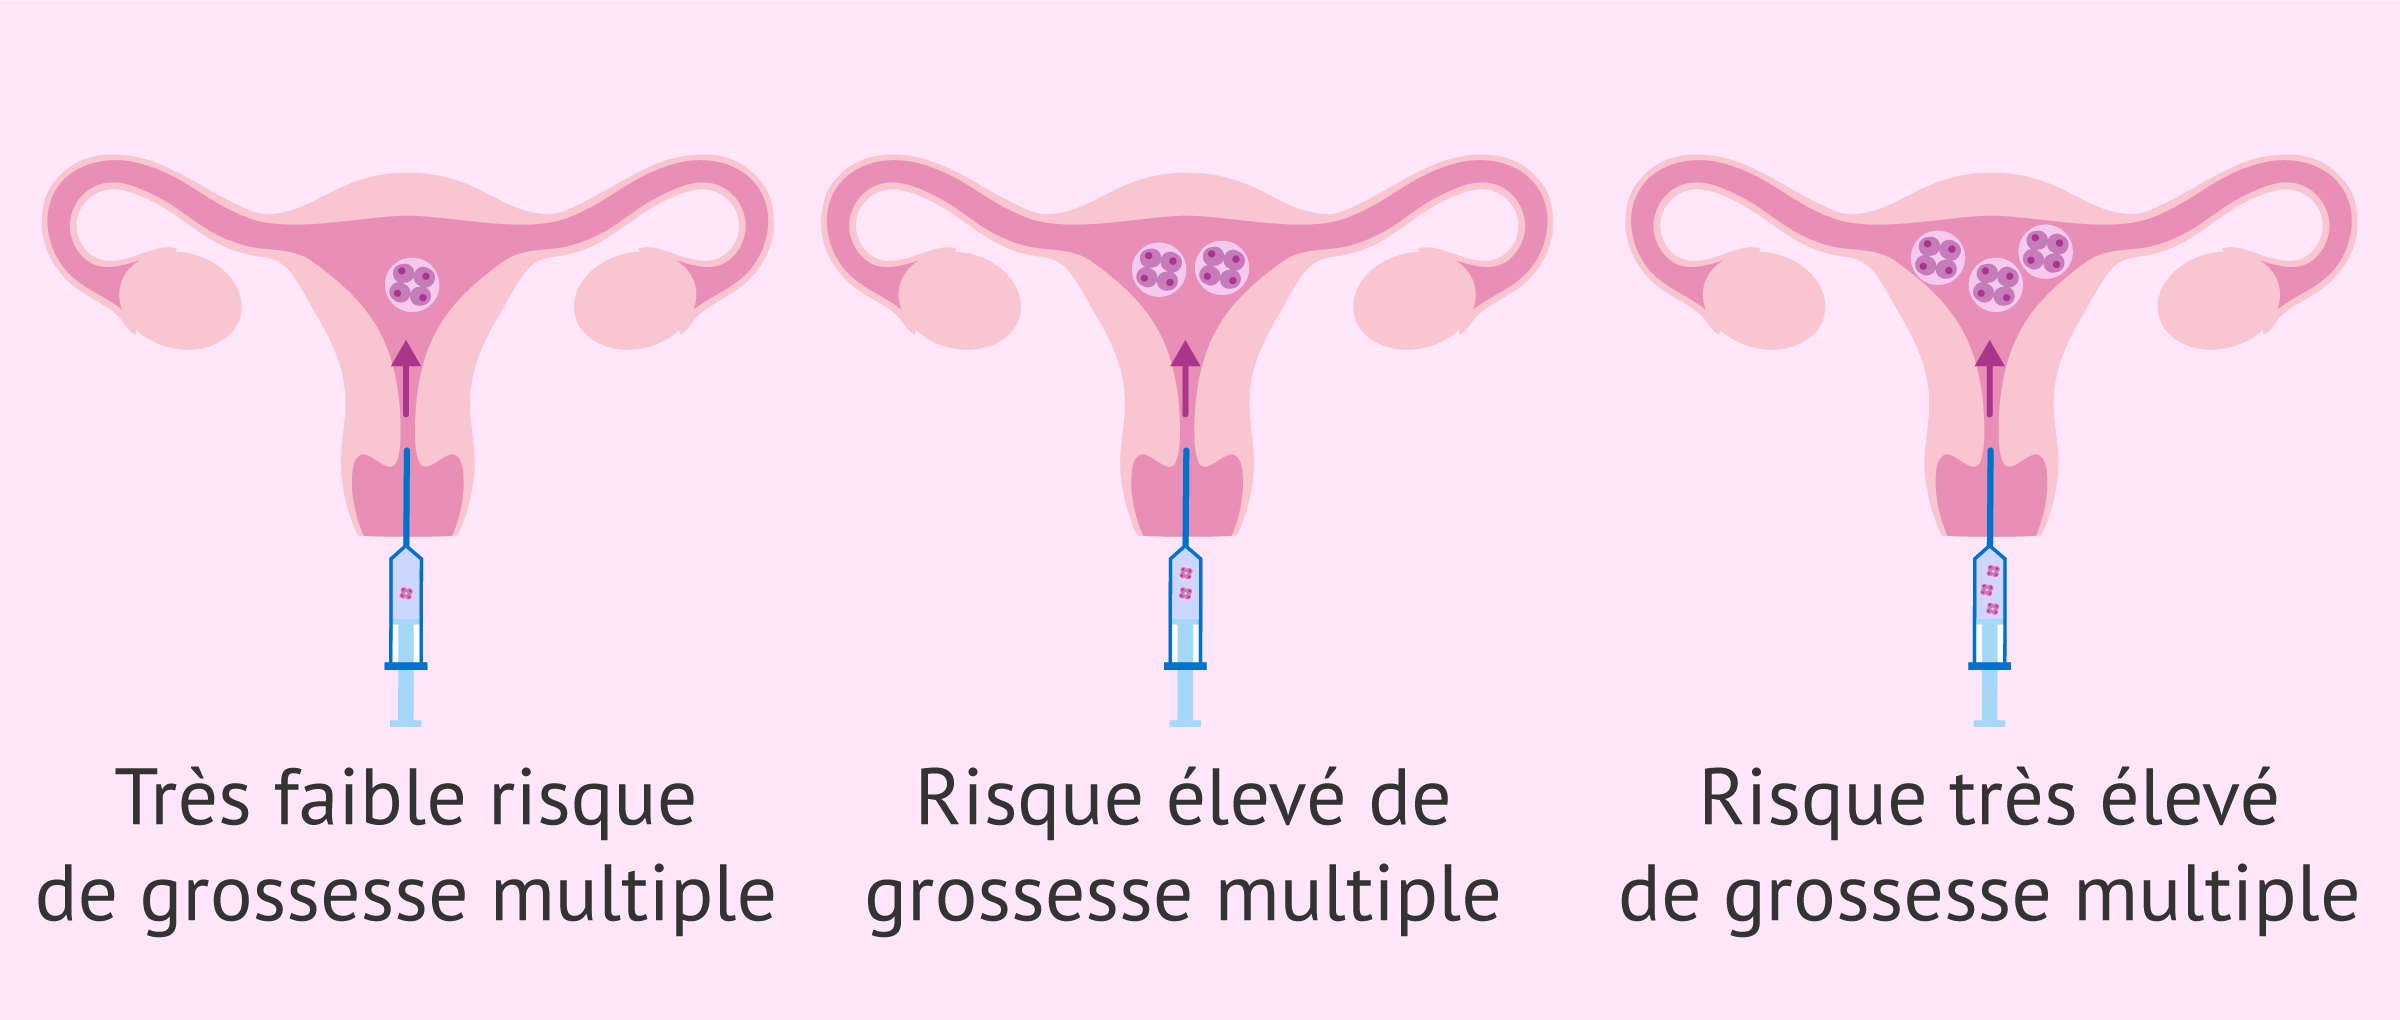 Risque de grossesse multiple en fonction du nombre d'embryons.